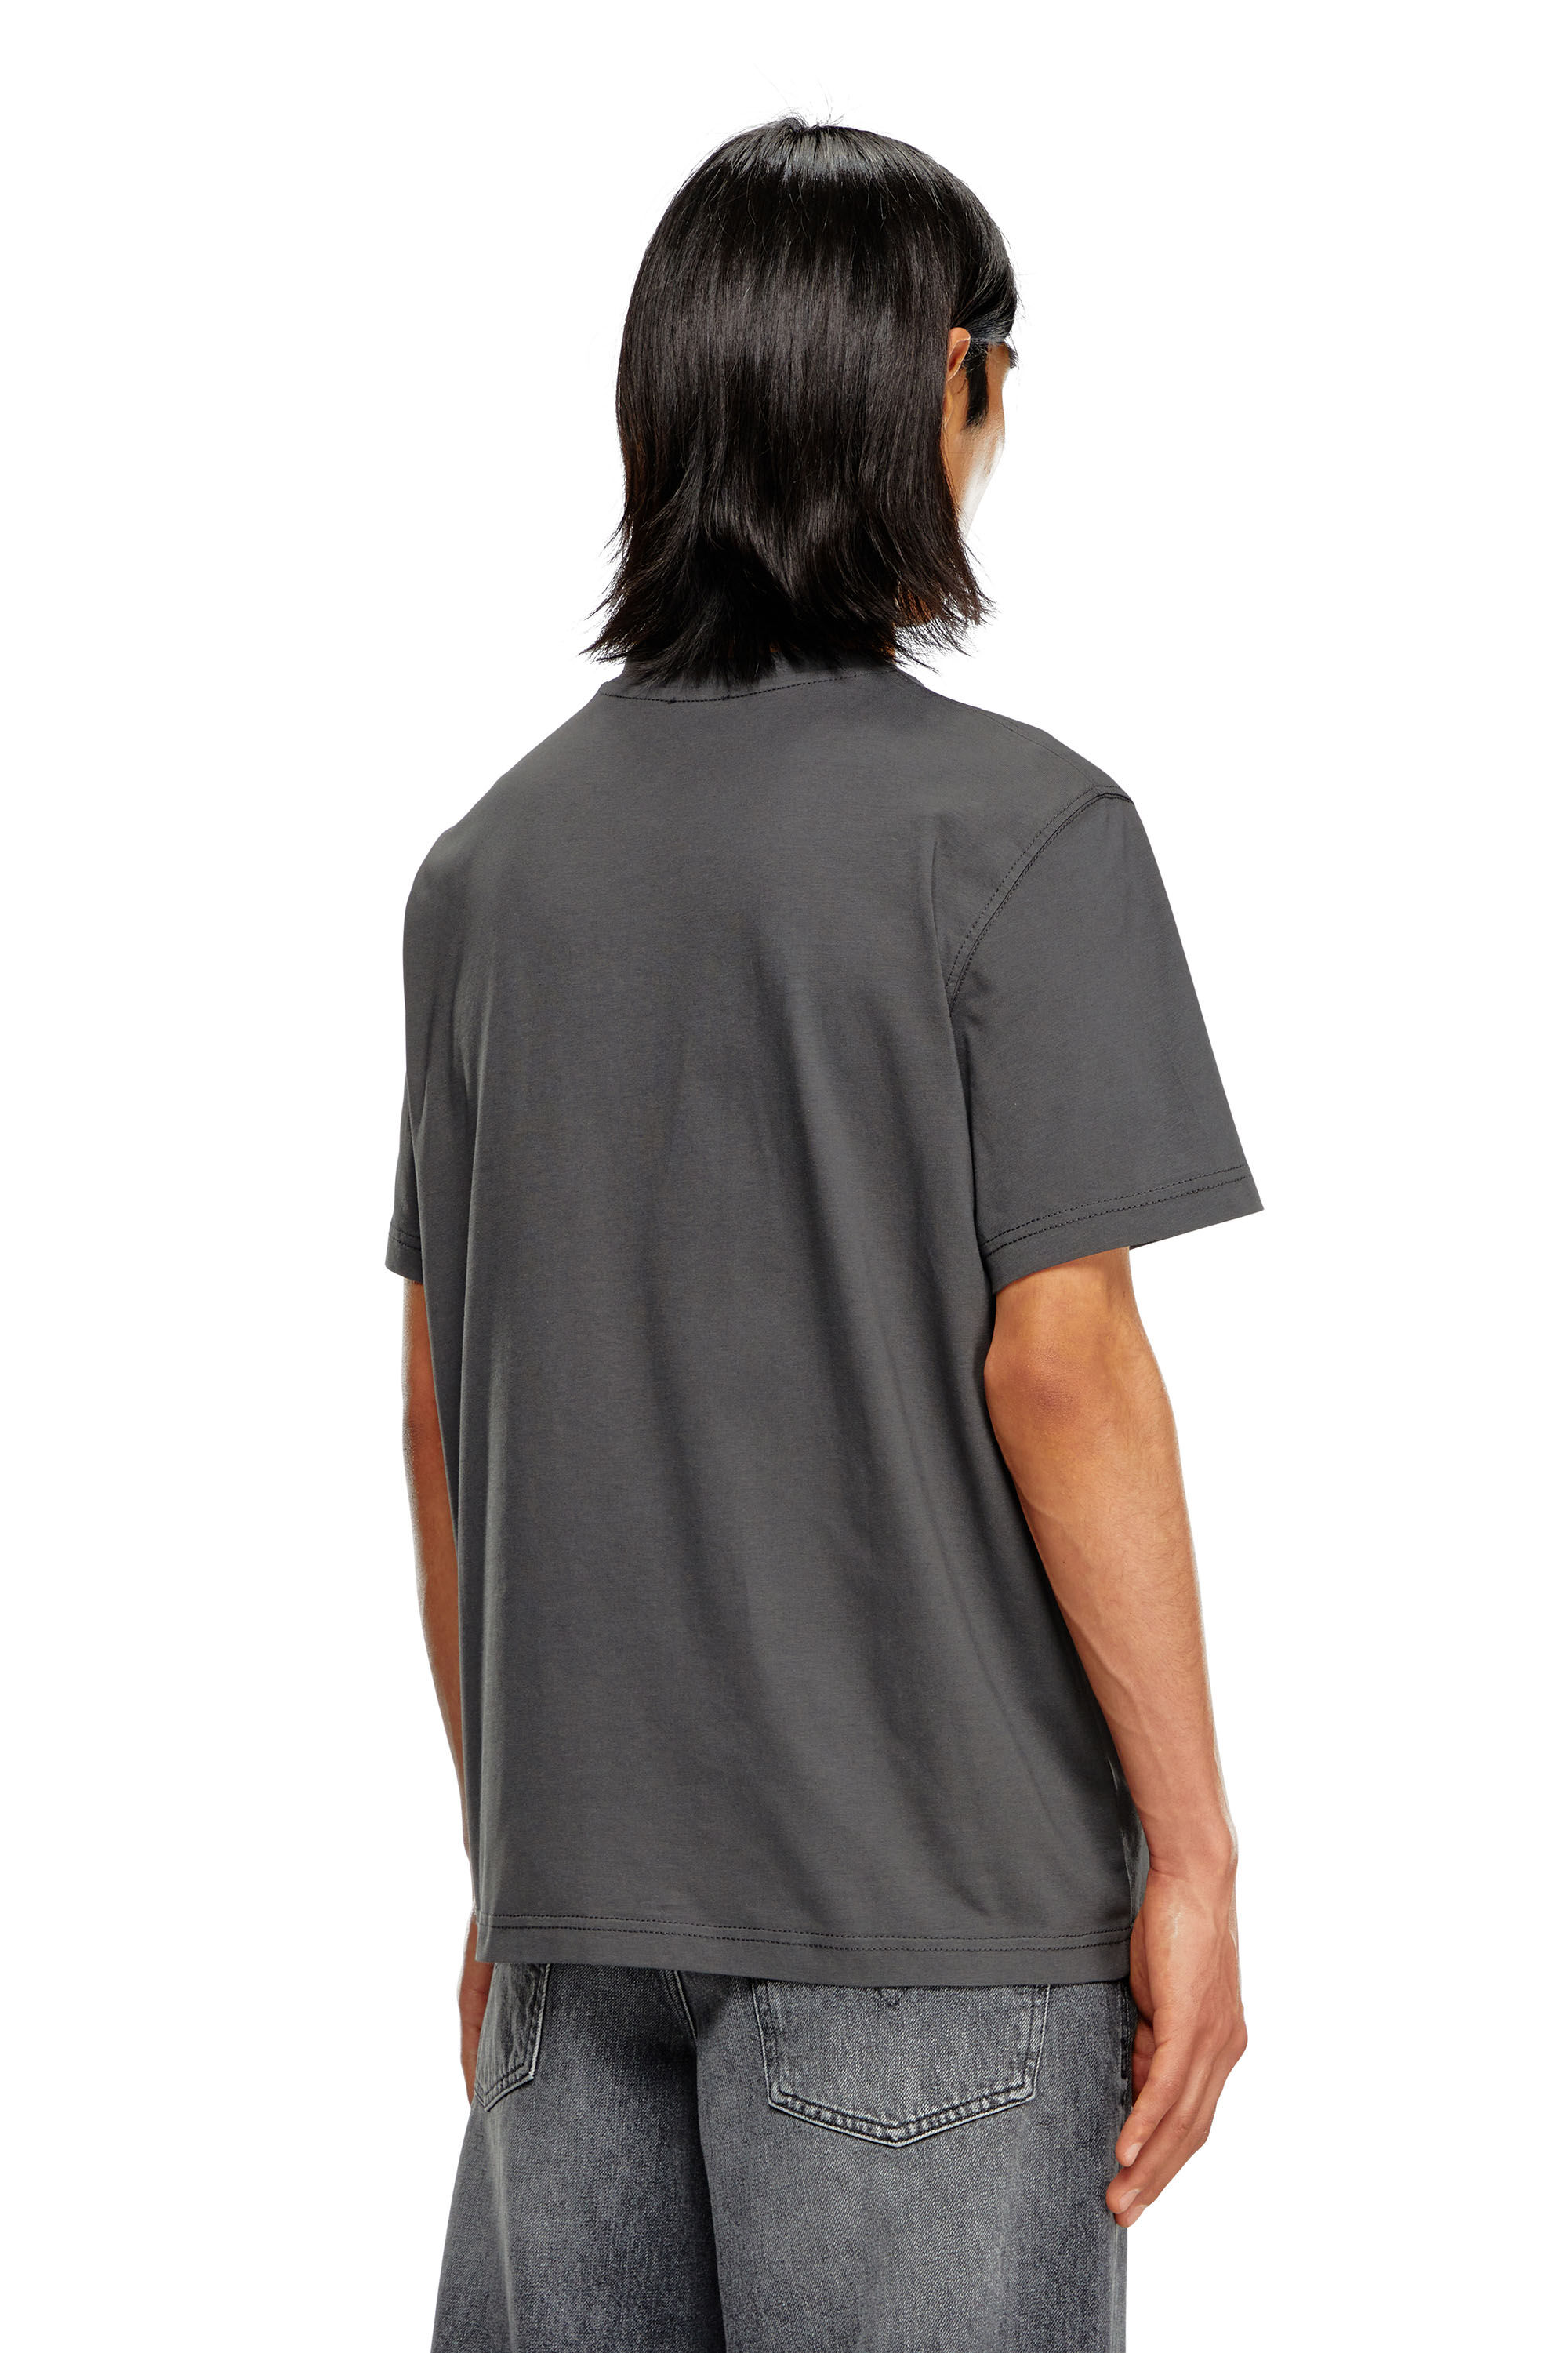 Diesel - T-ADJUST-Q7, Man T-shirt with blurry Diesel logo in Grey - Image 4